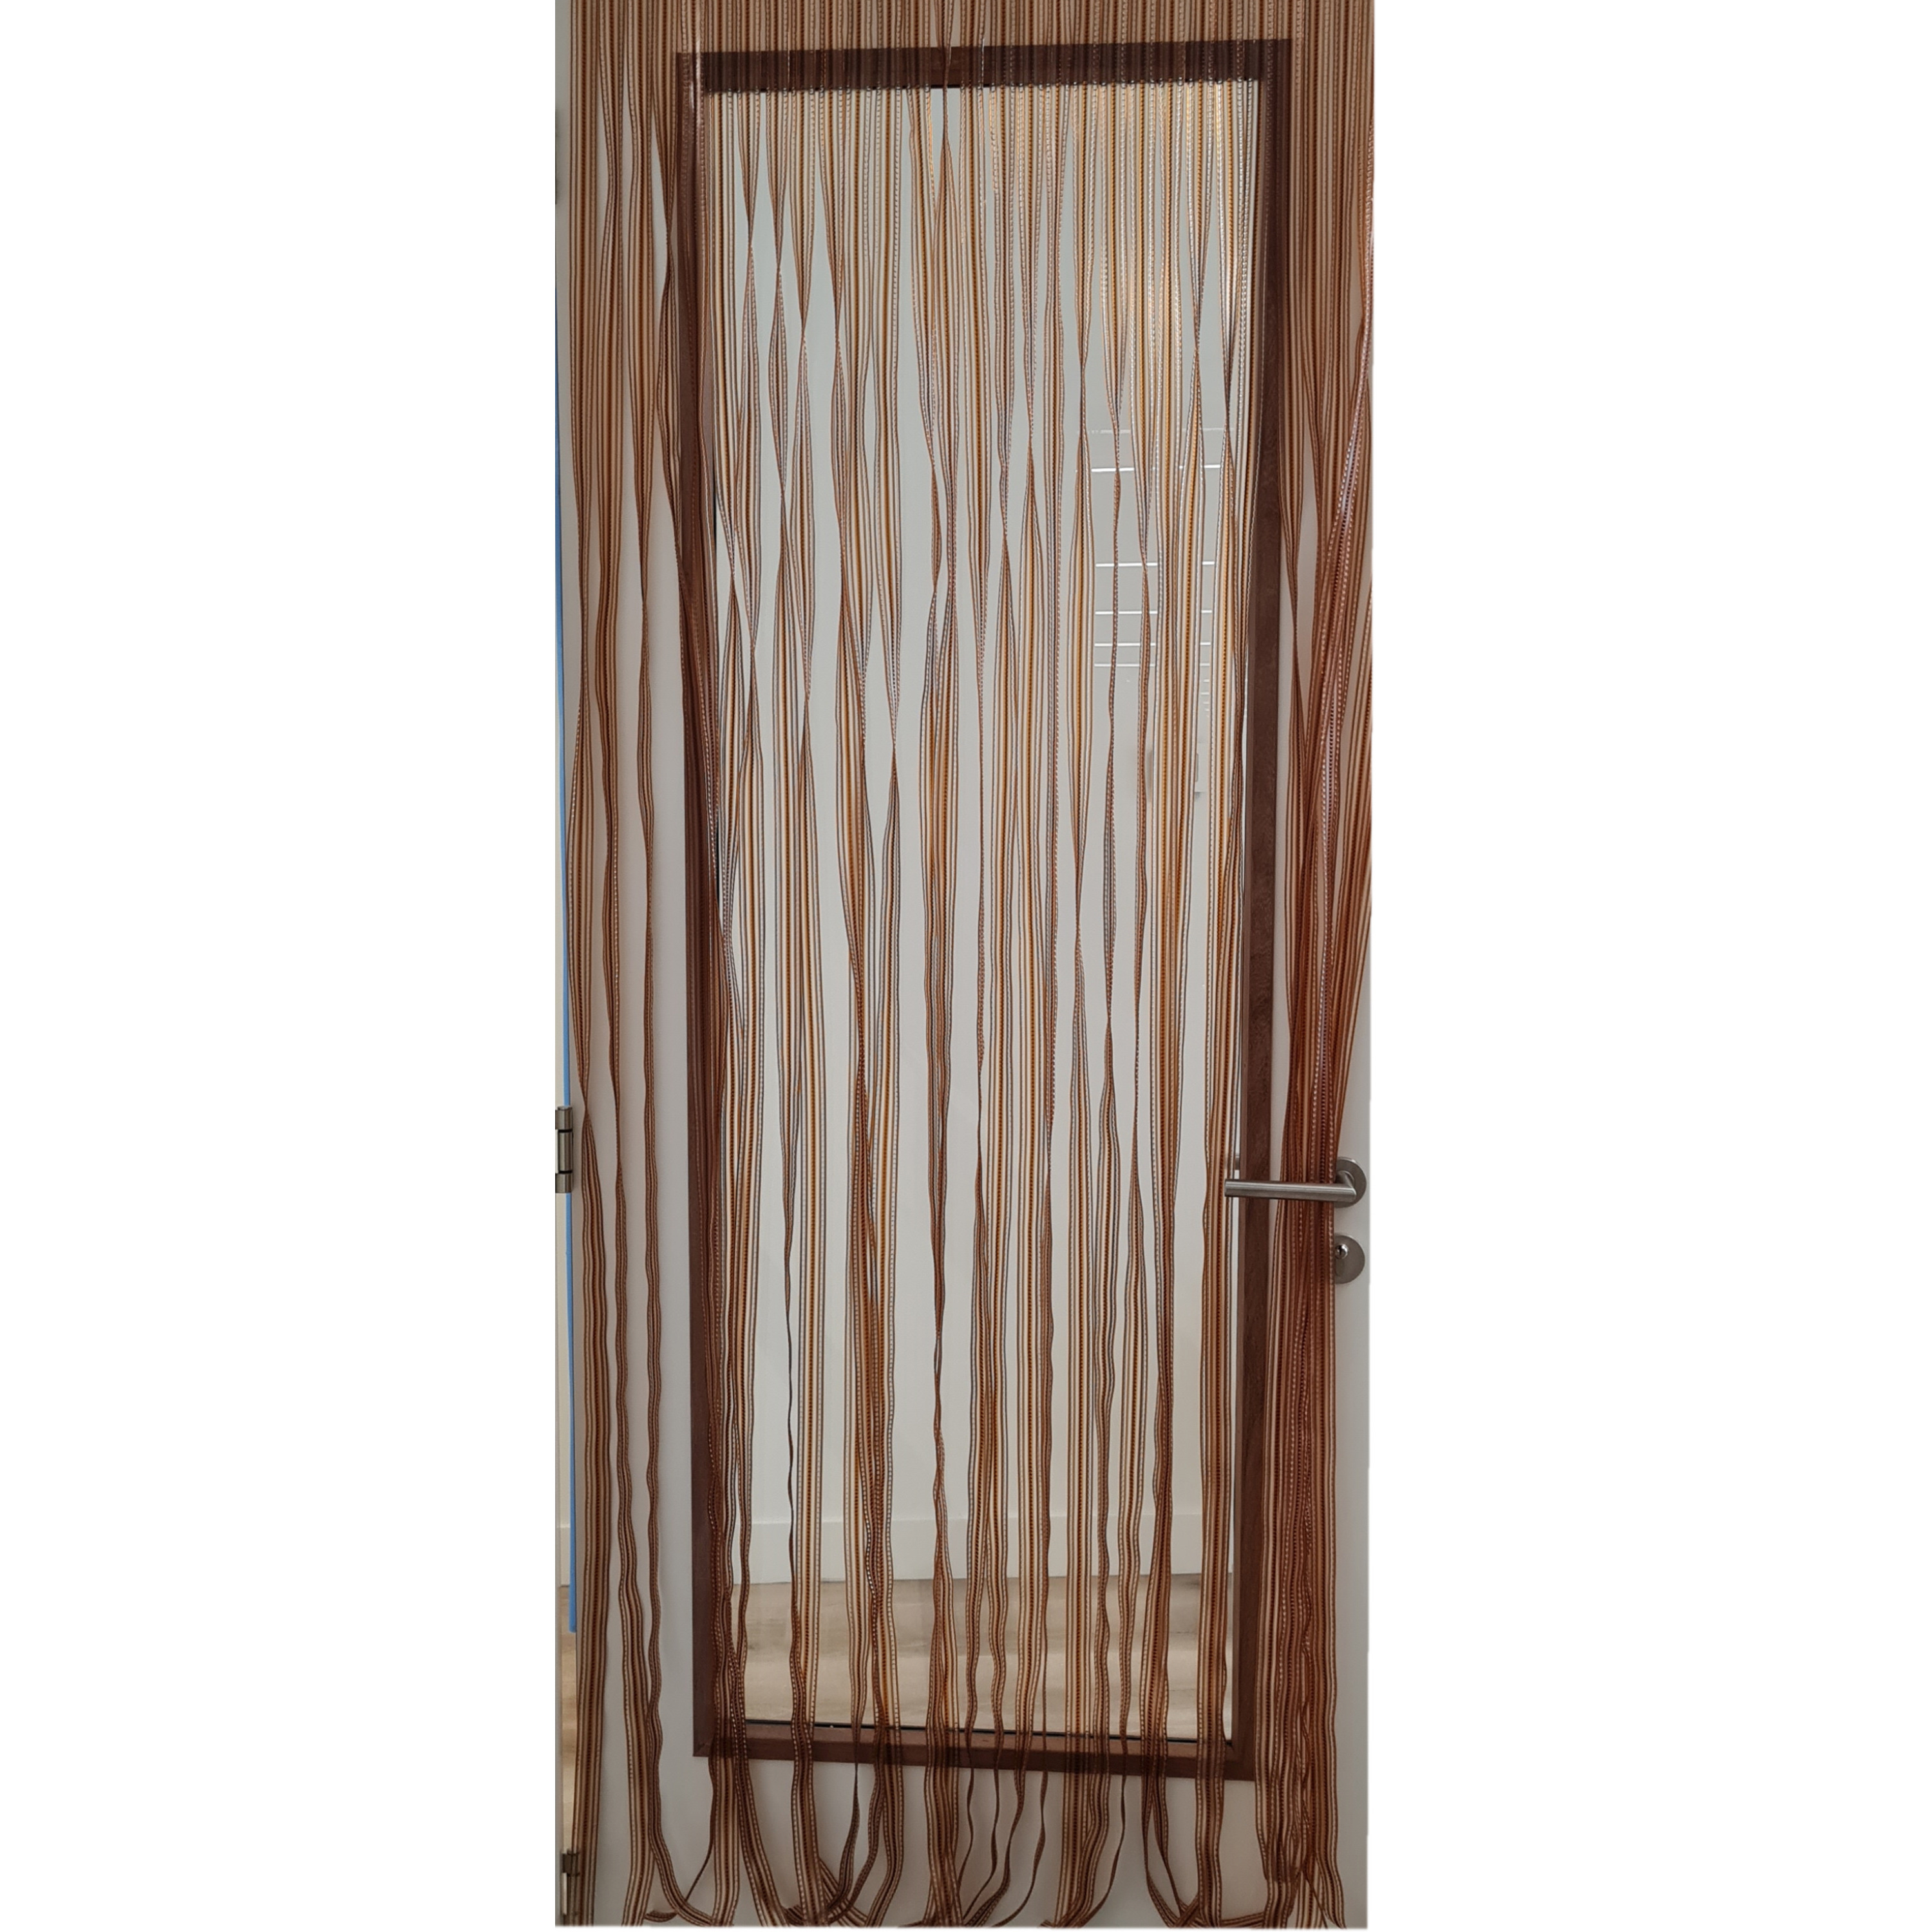 Vliegengordijn-deurgordijn PVC tris bruin 90 x 220 cm